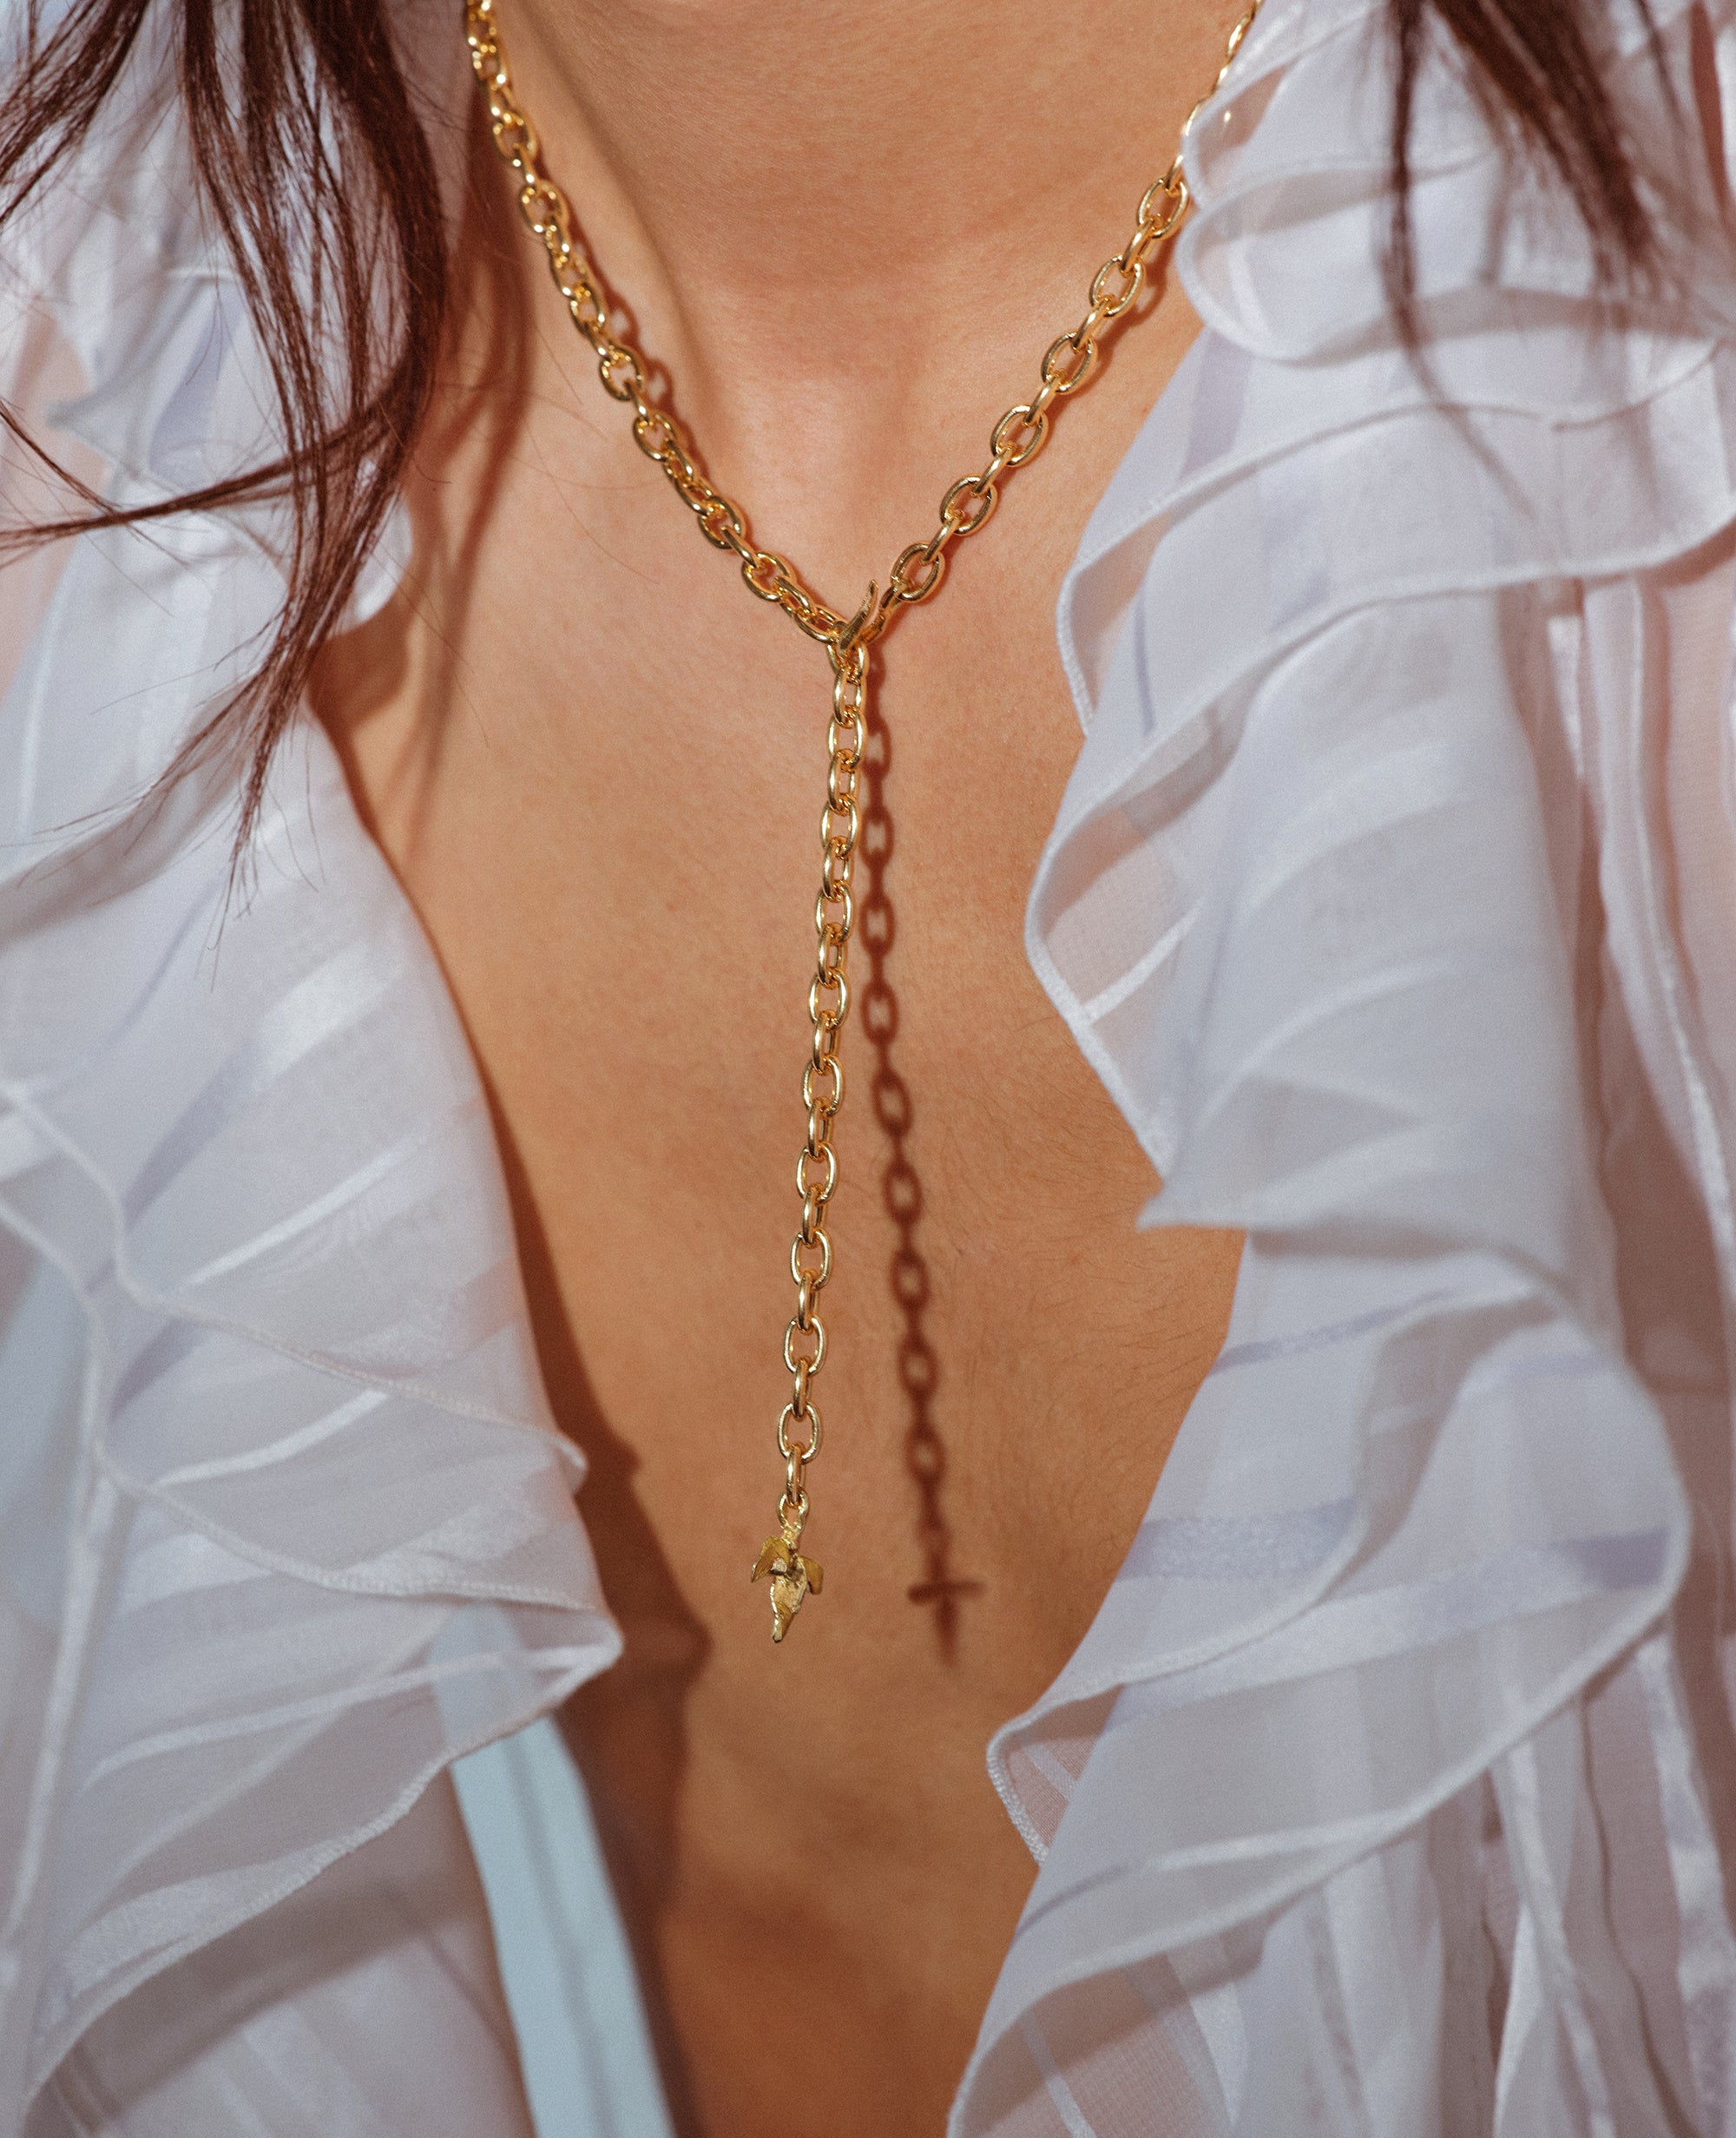 TRIFOLI // chaîne en argent - bijoux ORA-C - bijoux faits à la main par Caroline Pham, designer indépendante basée à Montréal